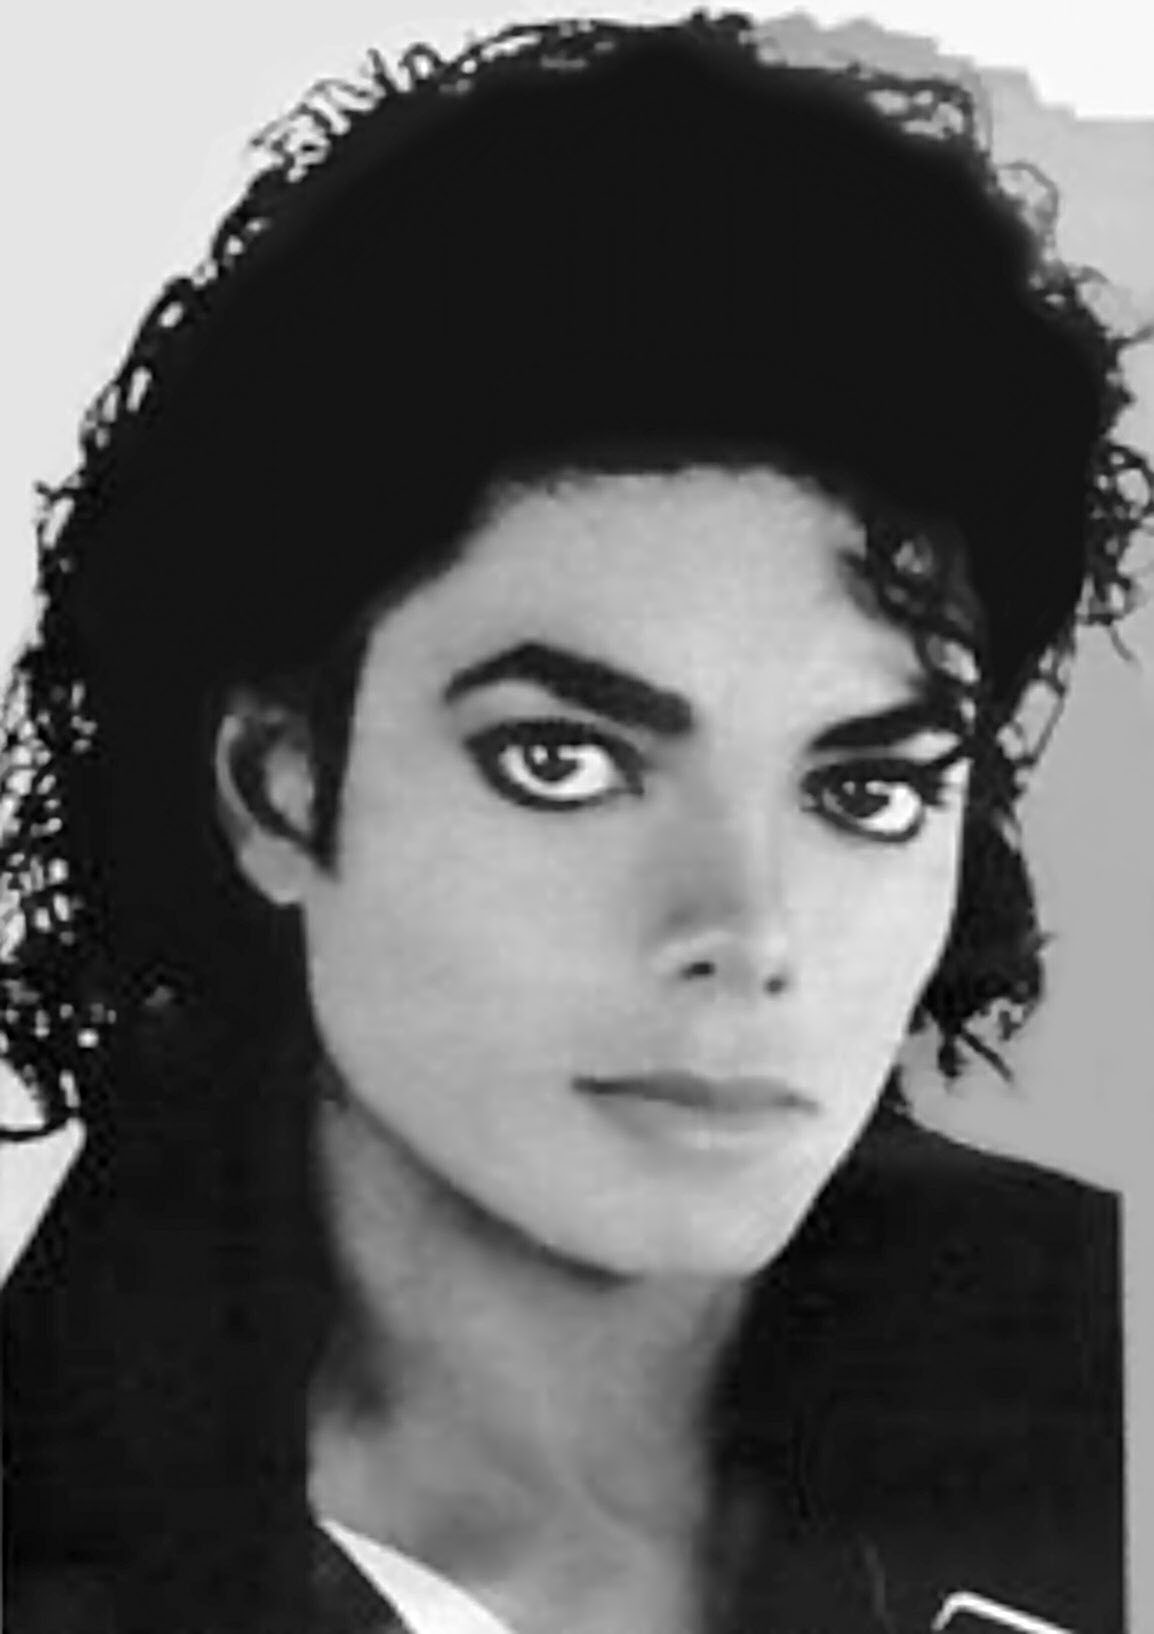 Michael Jackson - Images